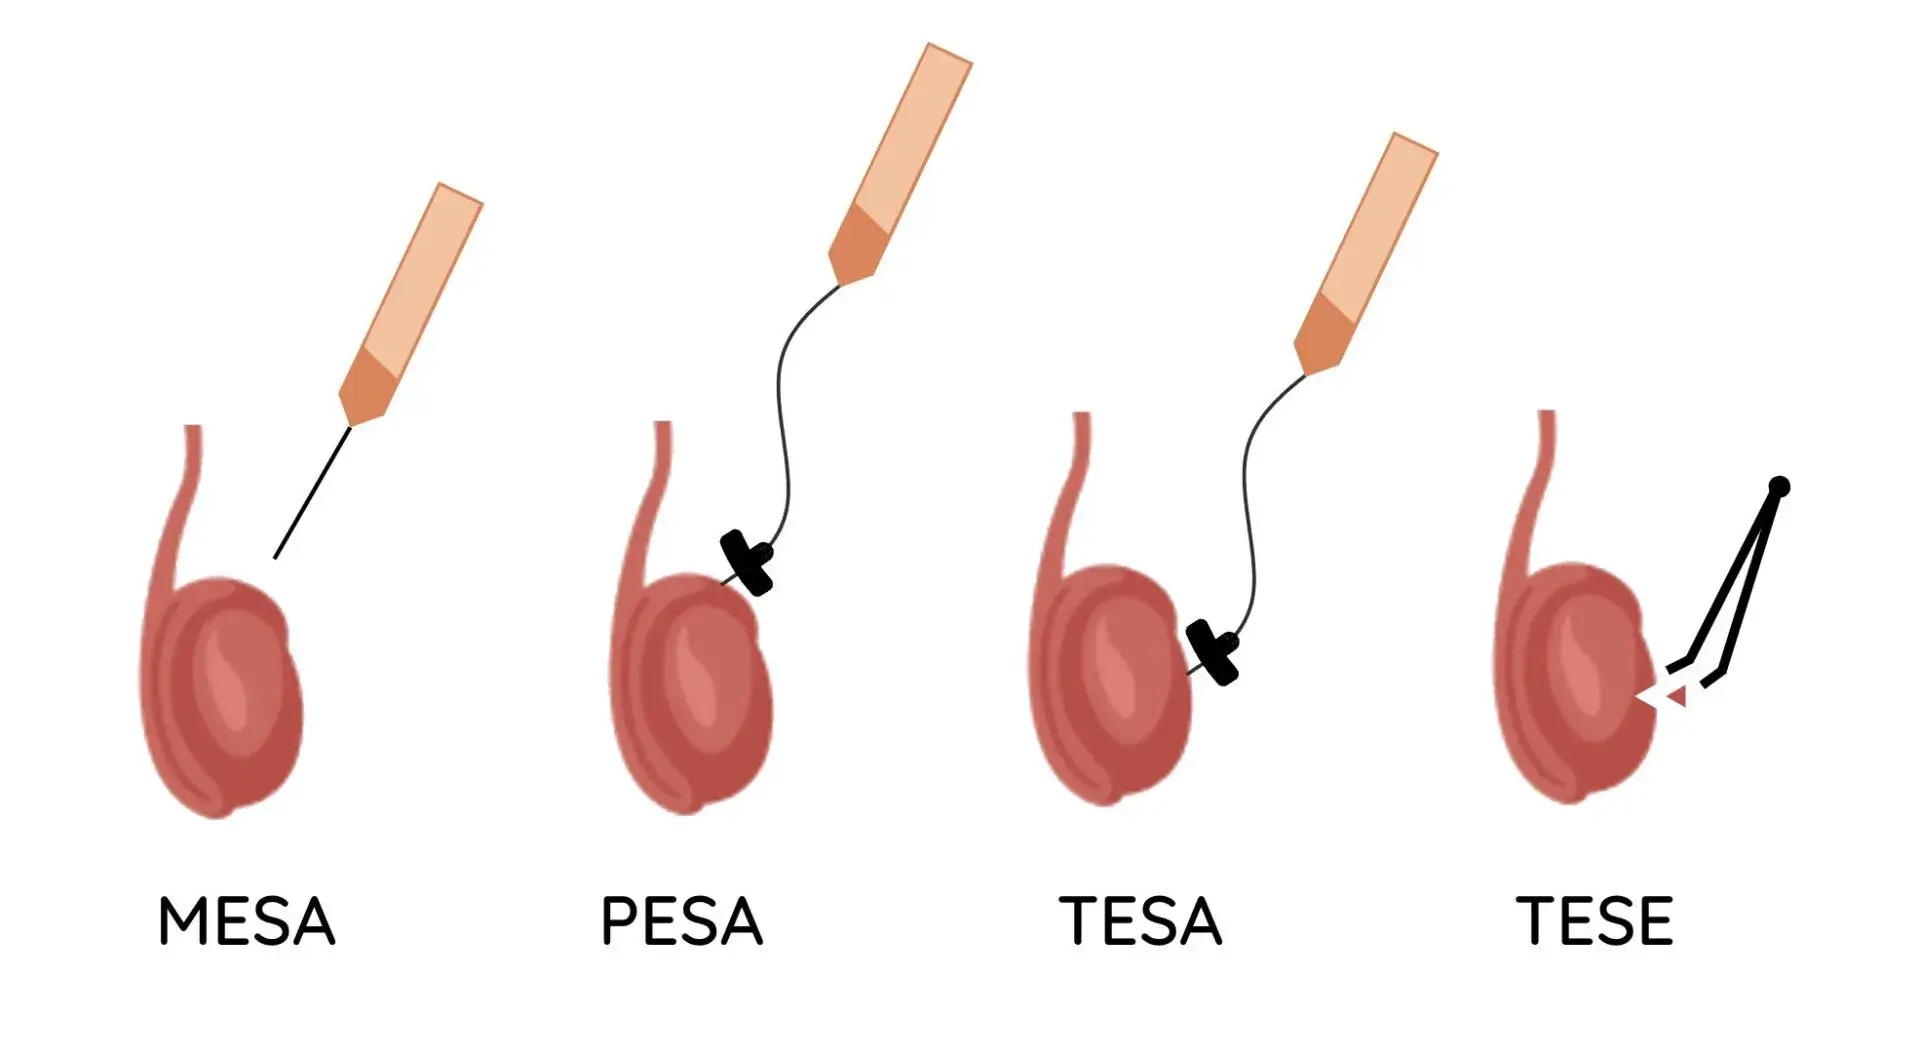 TESA/PESA Treatment Center in Chennai